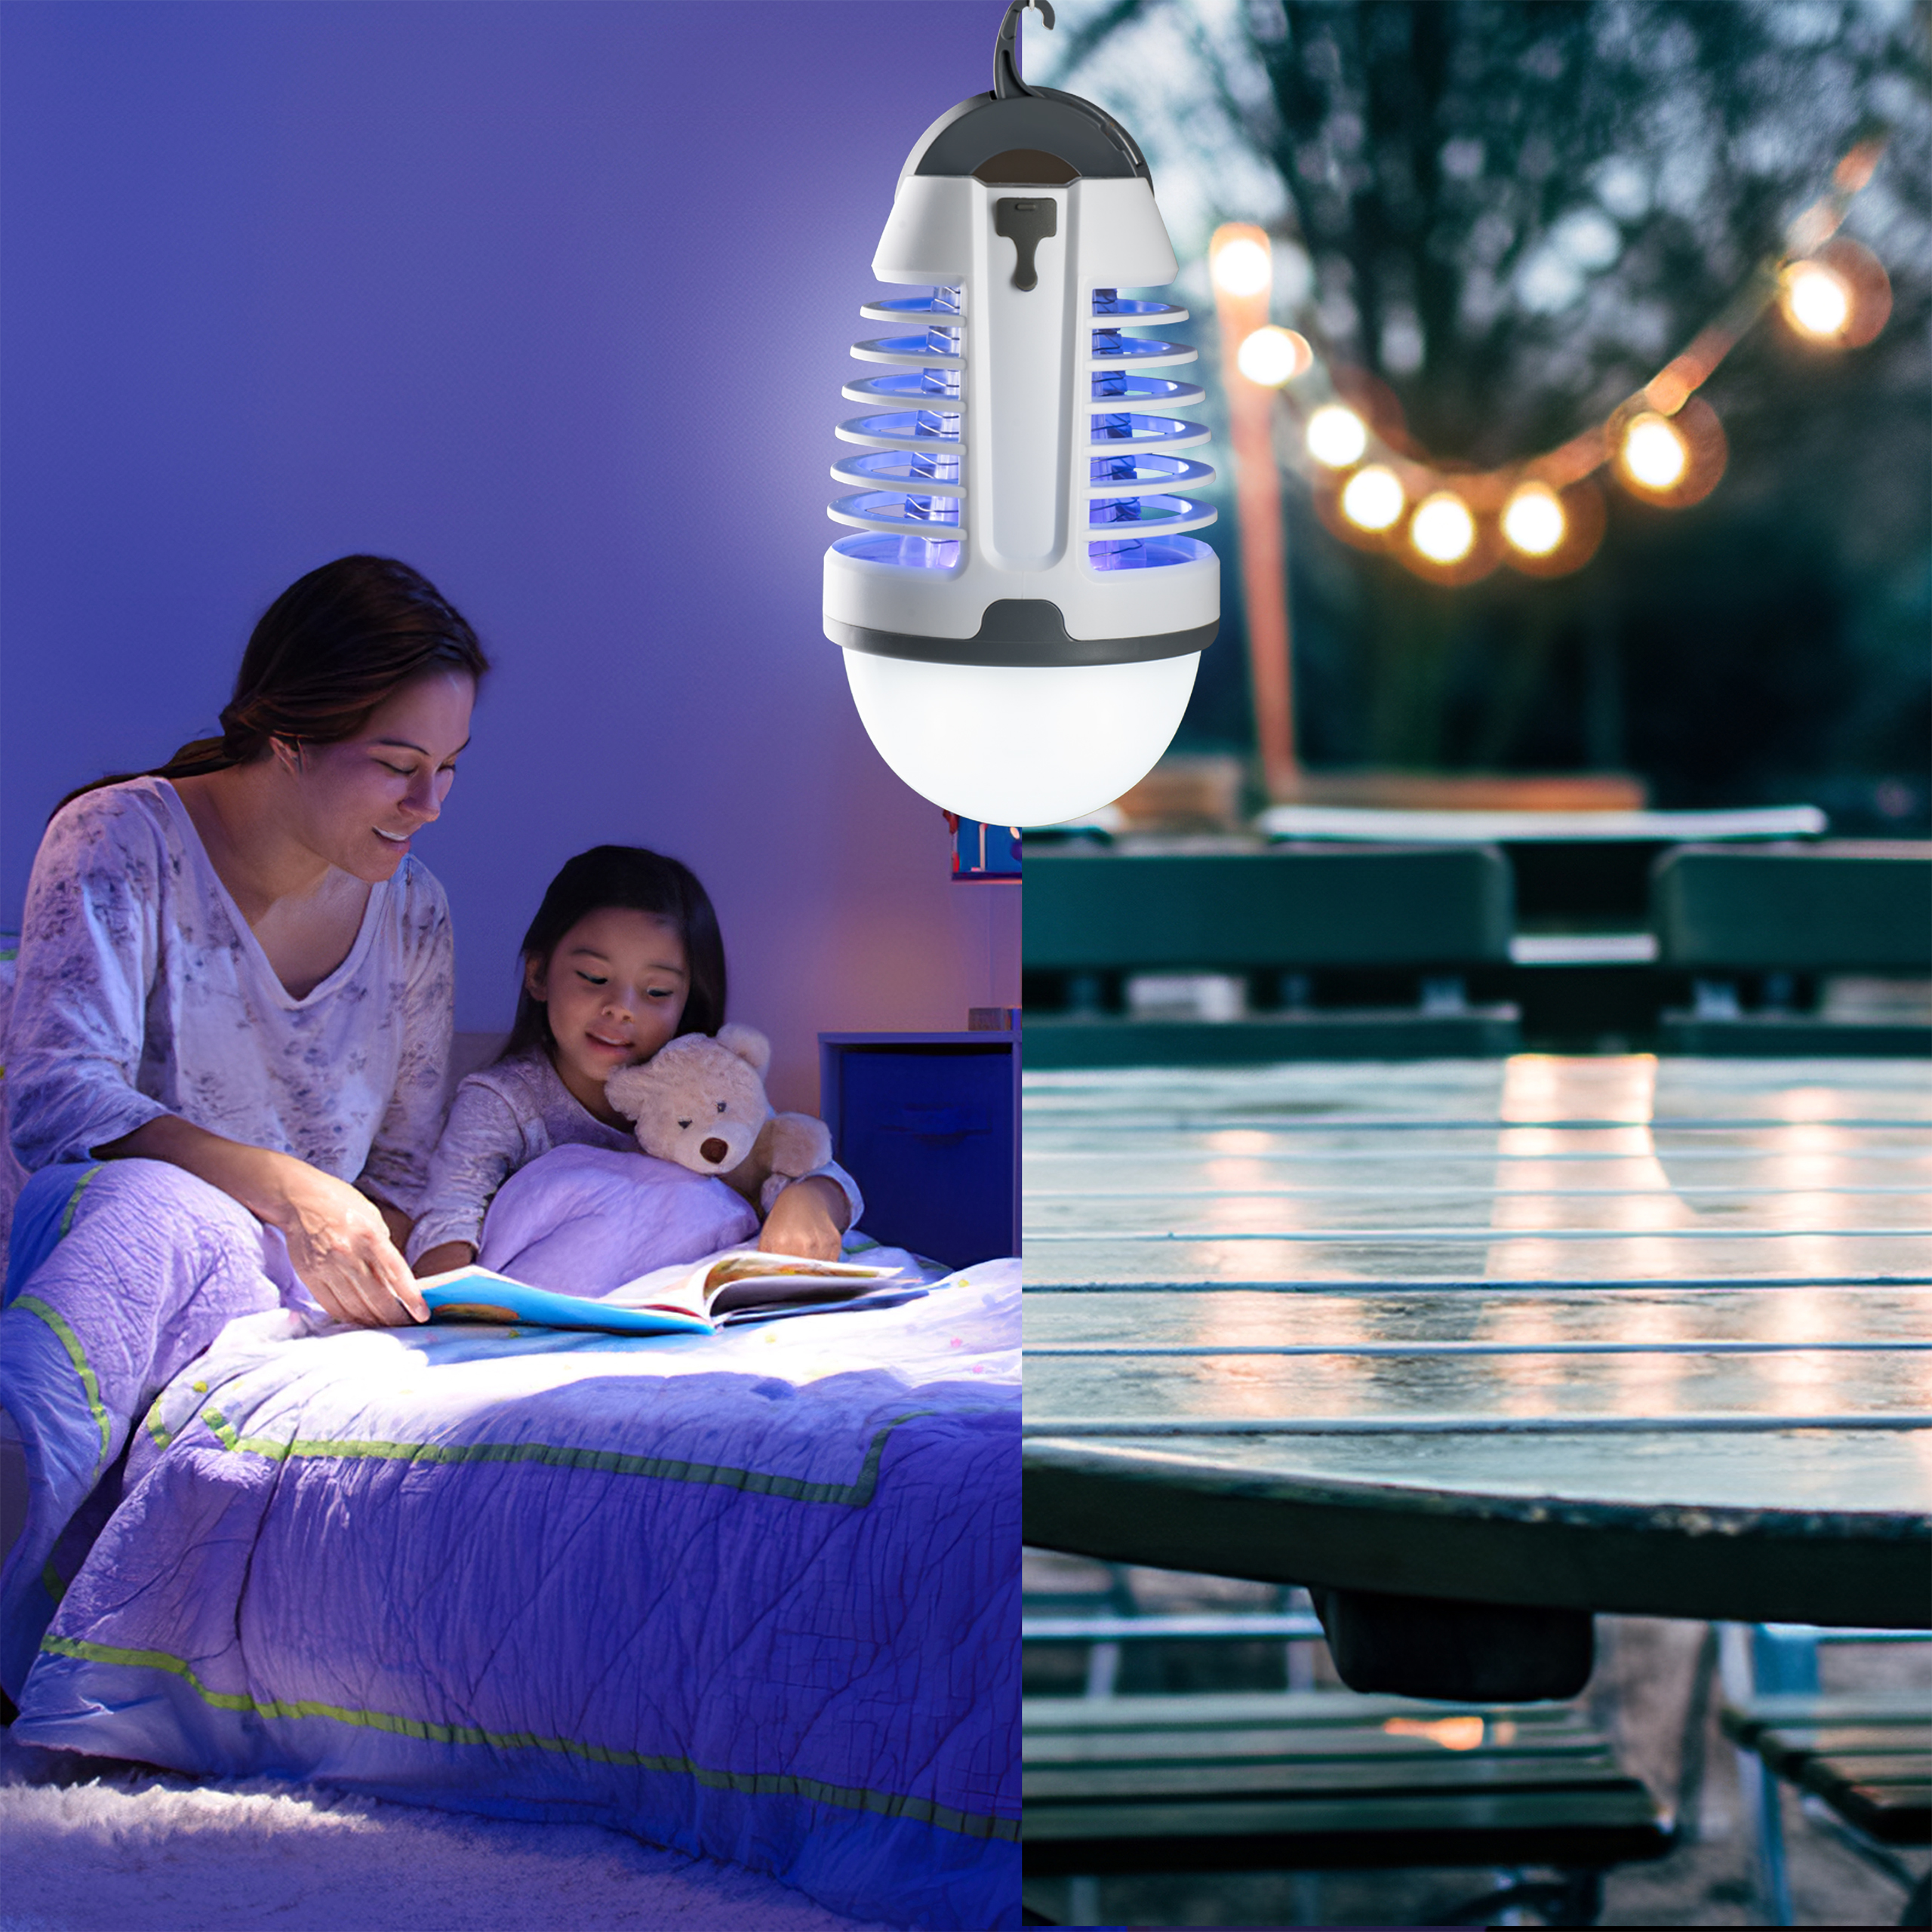 SEGMINISMART Elektrischer Insektenvernichter,Insektenkiller Moskito Killer mit UV-Licht,UV Insektenfalle Mückenlampe Intelligente Mückenvernichter Innen Außeneinsatz